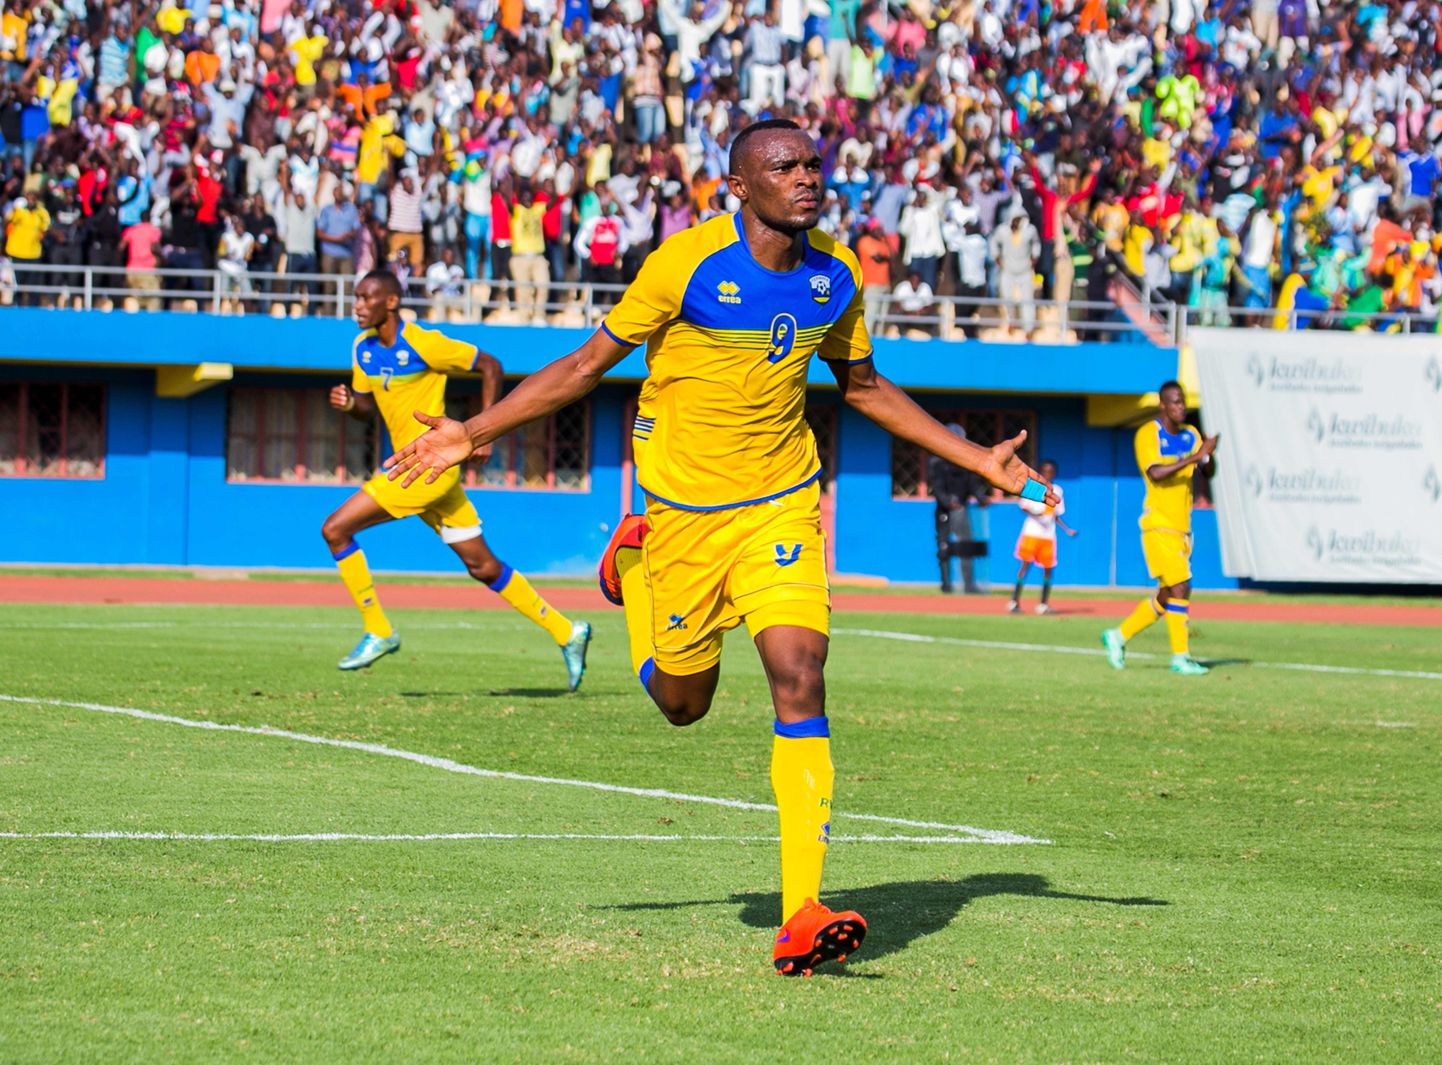 Rwanda jalgpallikoondislane Jacques Tuyisenge väravat tähistamas